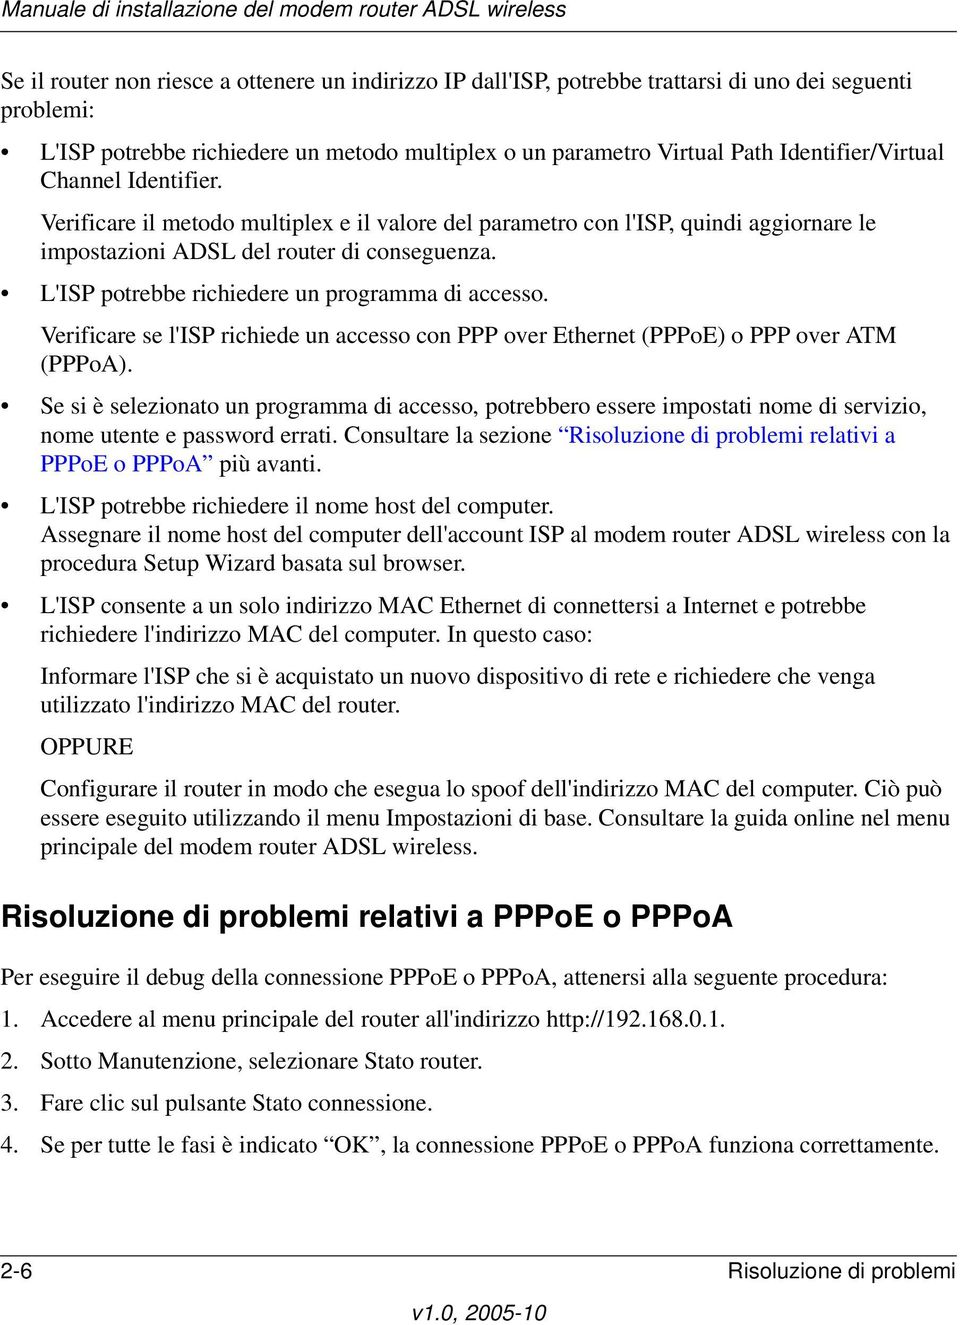 L'ISP potrebbe richiedere un programma di accesso. Verificare se l'isp richiede un accesso con PPP over Ethernet (PPPoE) o PPP over ATM (PPPoA).